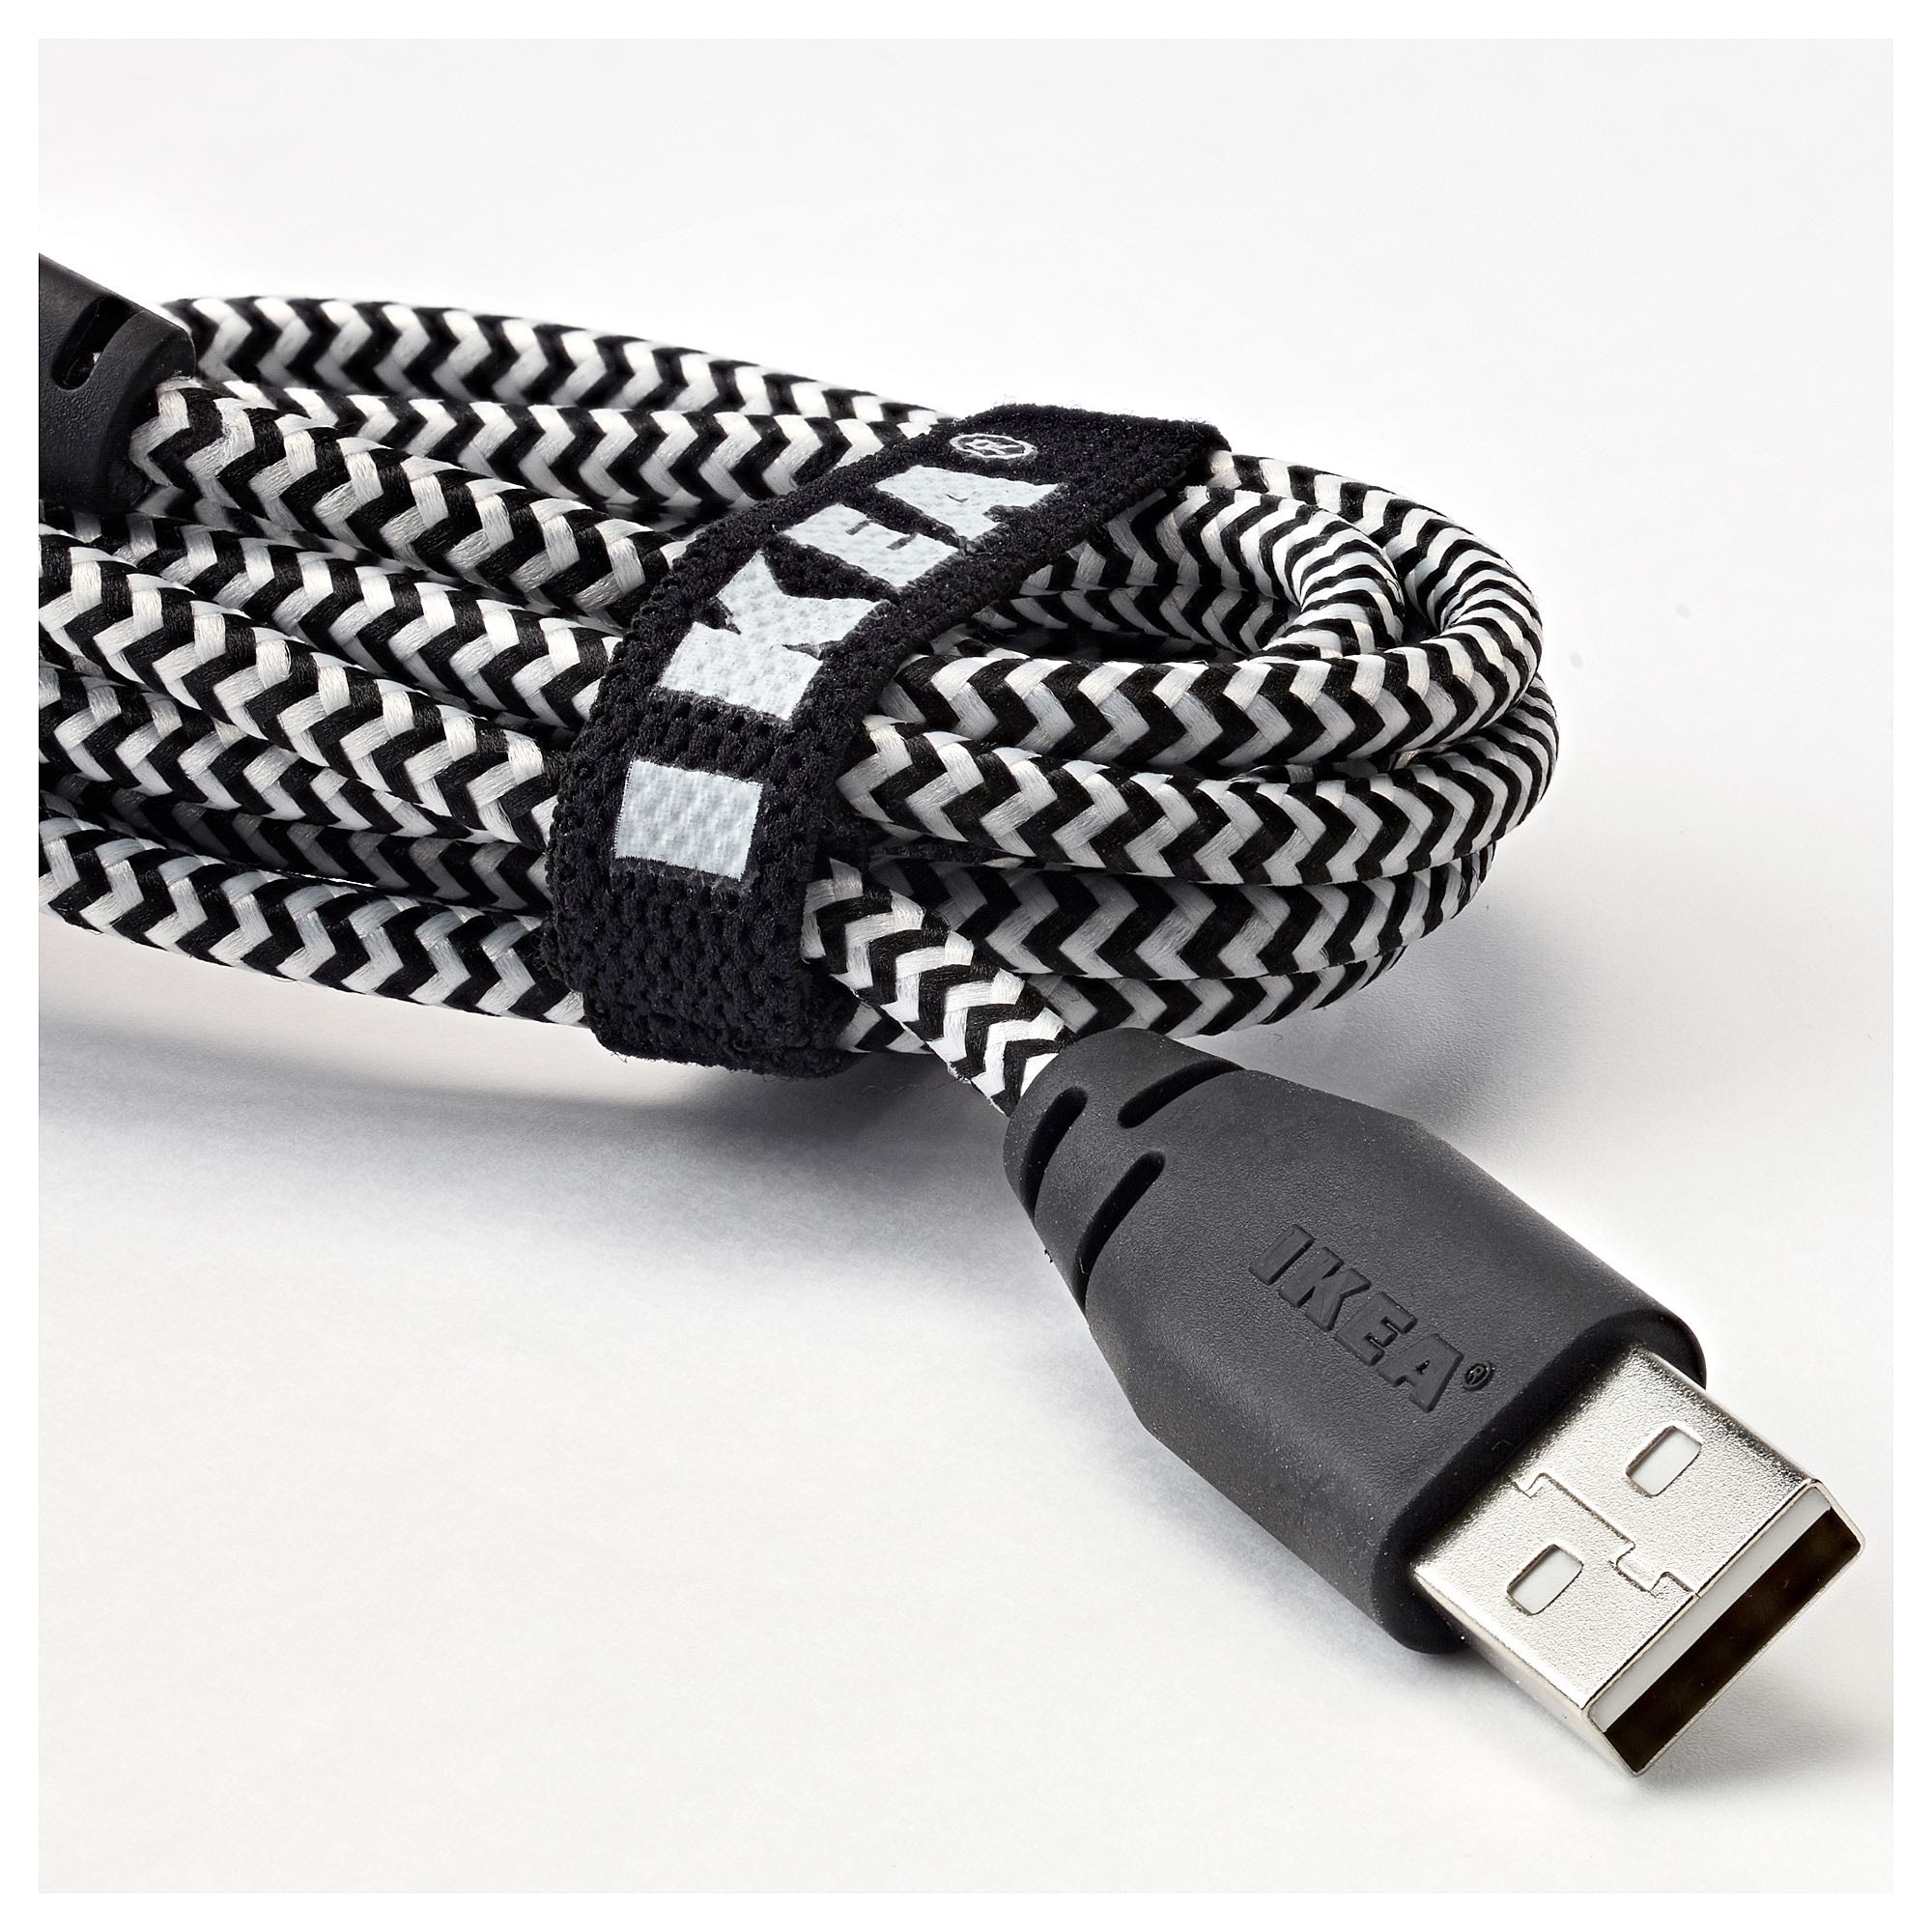 Купить шнур для зарядки. Лилльхульт кабель USB Тип c-USB, 1.5 М 504.135.88. Лилльхульт кабель микро-USB-USB1.5 М. Lightning кабель ikea лилльхульт. LILLHULT лилльхульт.